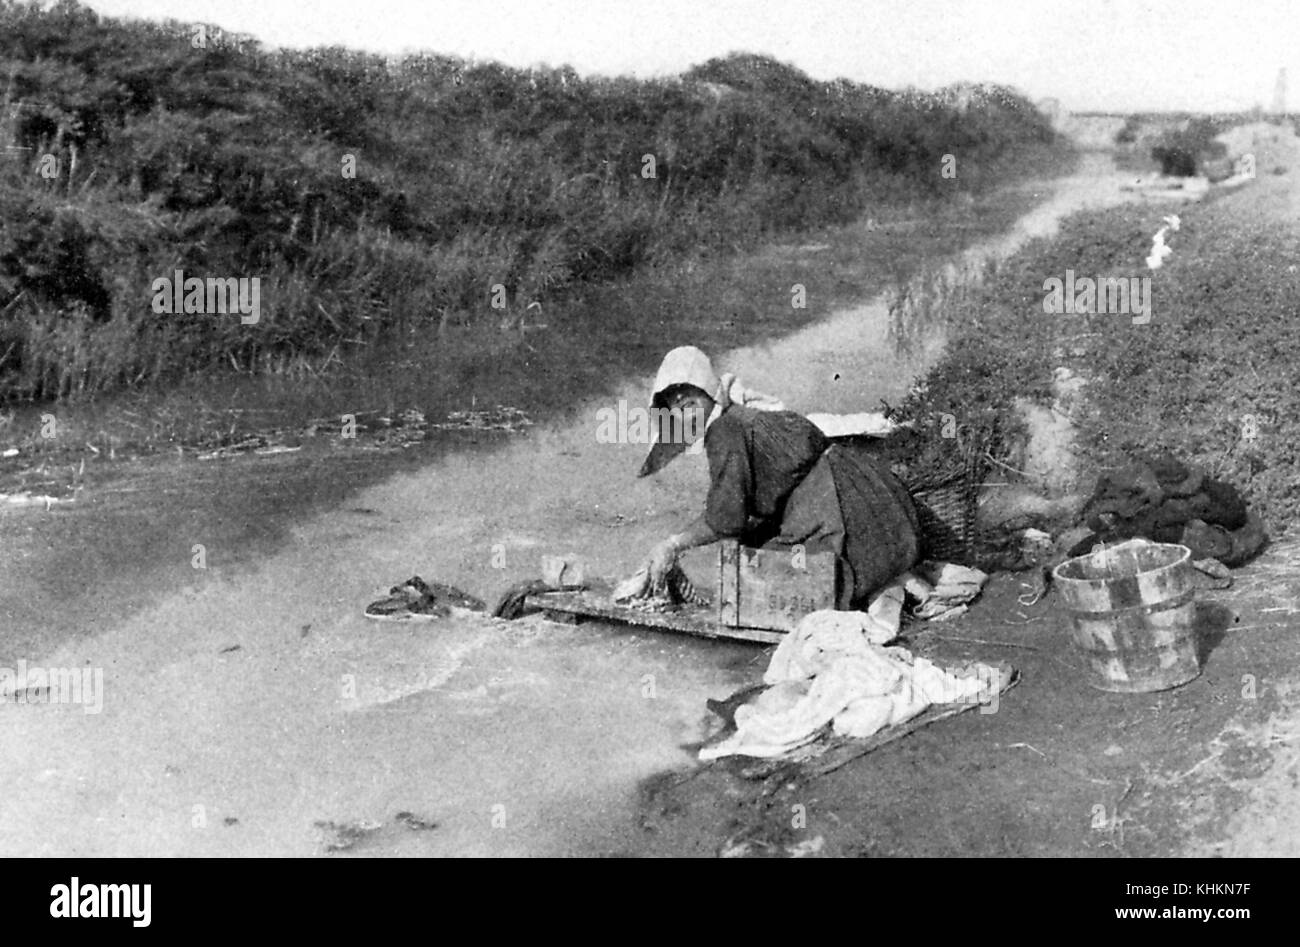 Une photographie d'une femme faisant la blanchisserie dans un petit plan d'eau courante, elle porte des vêtements simples et un chapeau alors qu'à genoux dans la boue au bord de l'eau, l'herbe pousse court le long du bord de l'eau, Camargue, France, juillet, 1922. Banque D'Images